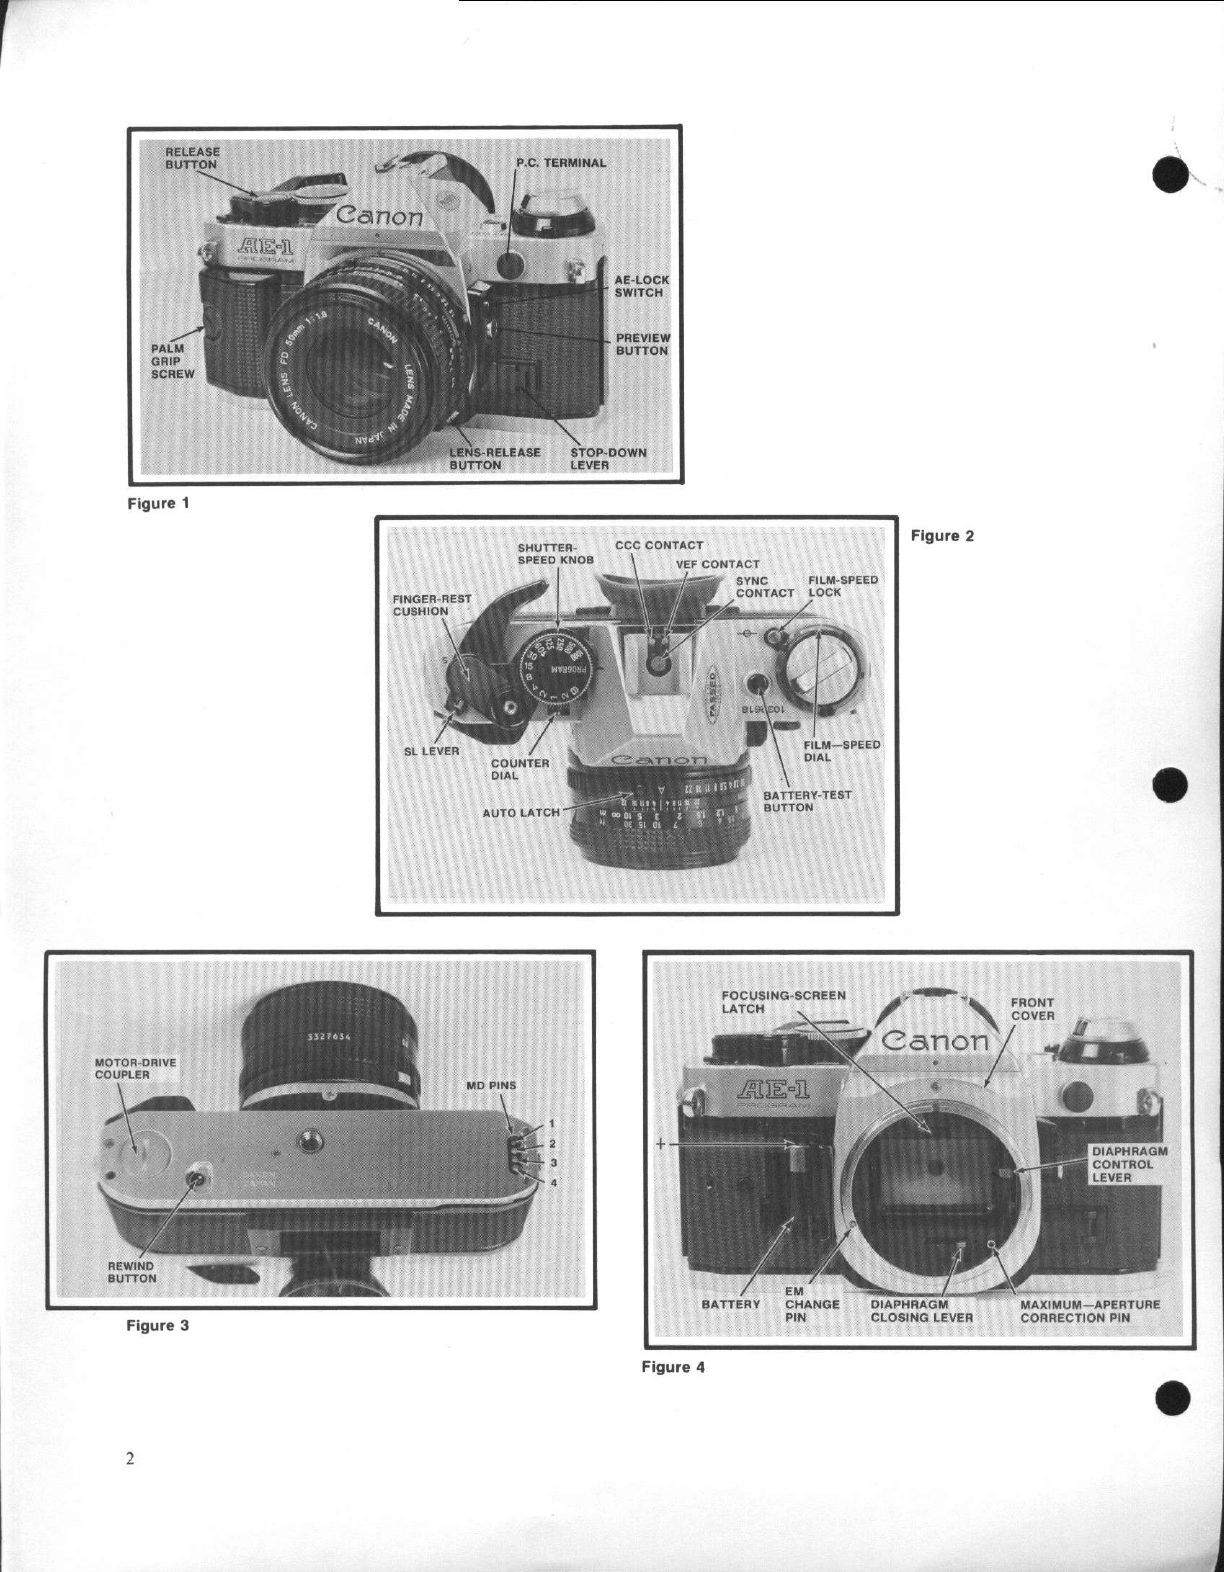 Canon Ae 1 Program Service Manual